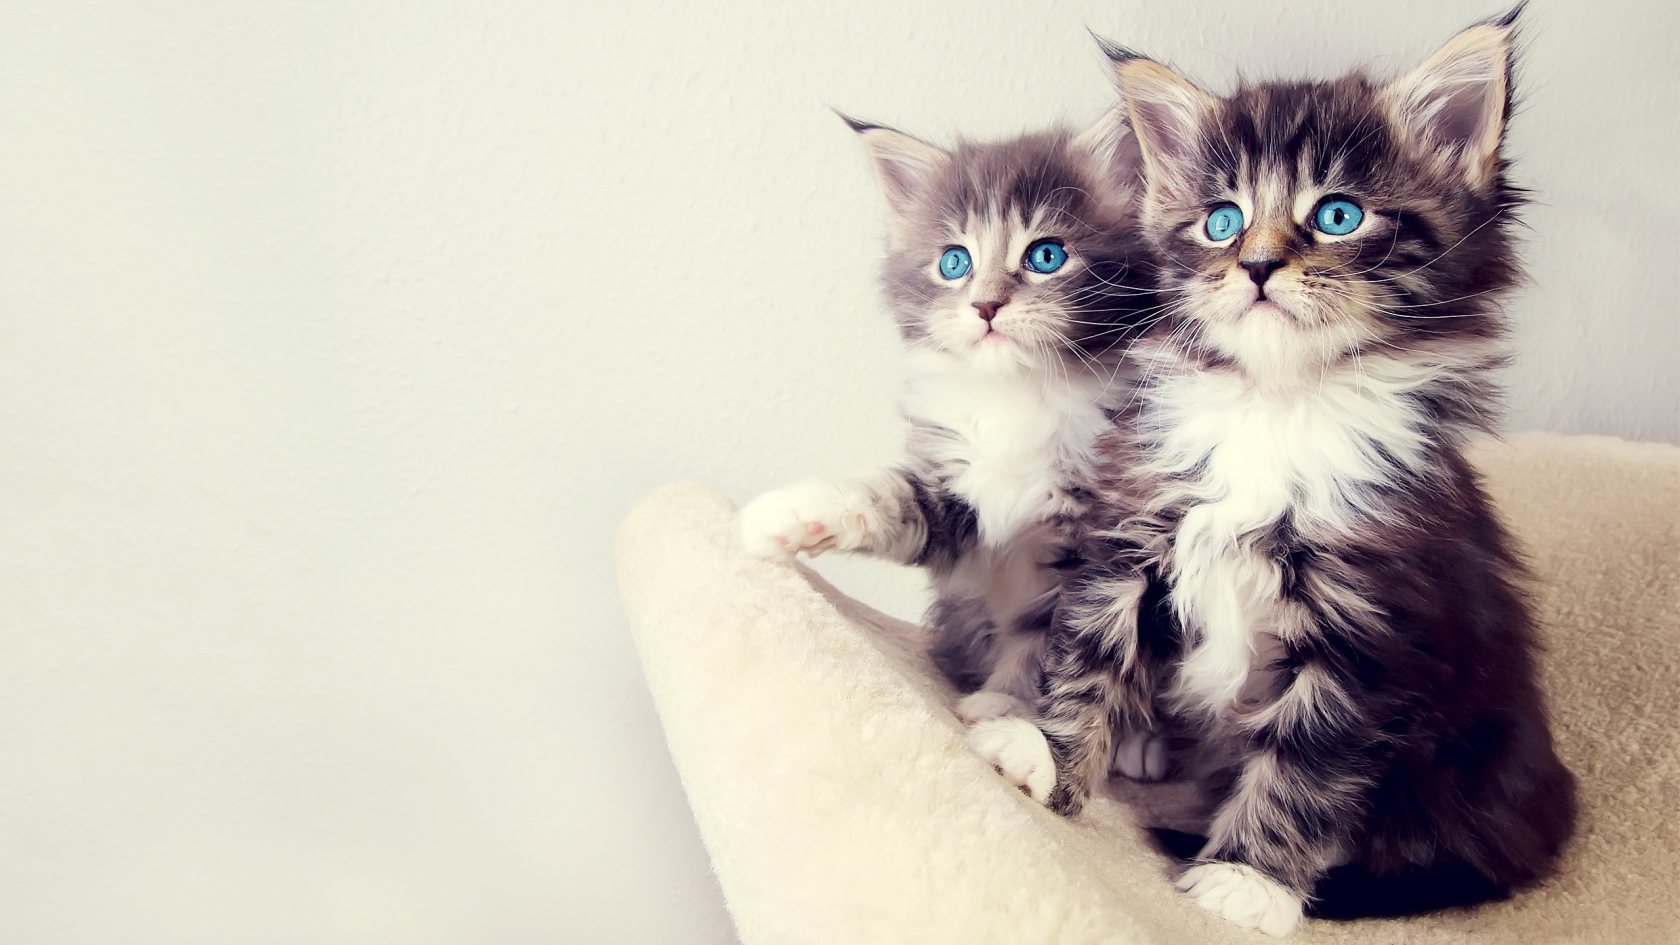 Gorgeous Kittens for 1680 x 945 HDTV resolution